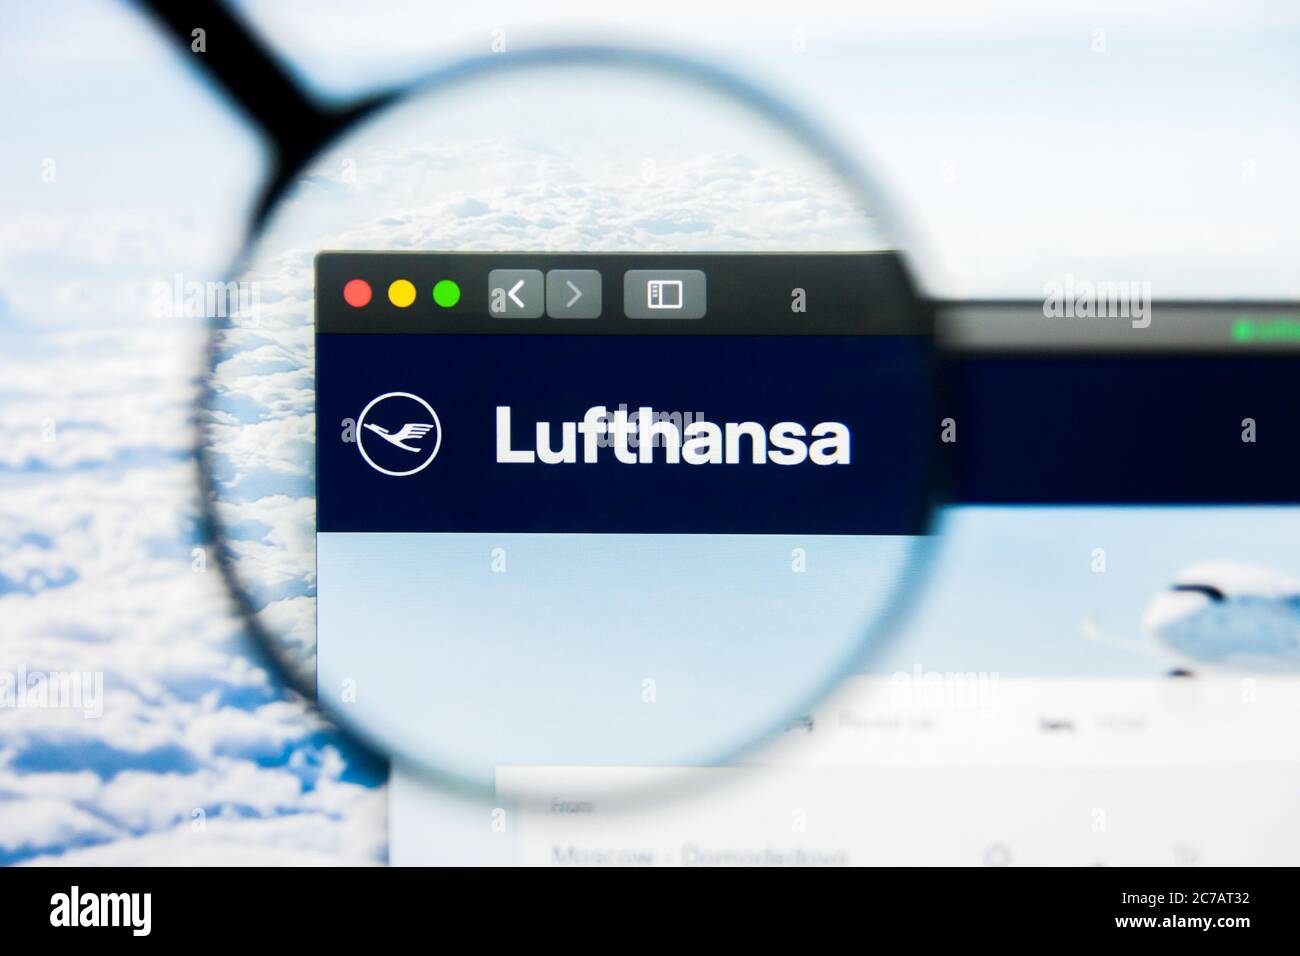 Los Angeles, Kalifornien, USA - 21. März 2019: Illustrative Editorial der Lufthansa Website-Homepage. Lufthansa Logo auf dem Display sichtbar. Stockfoto